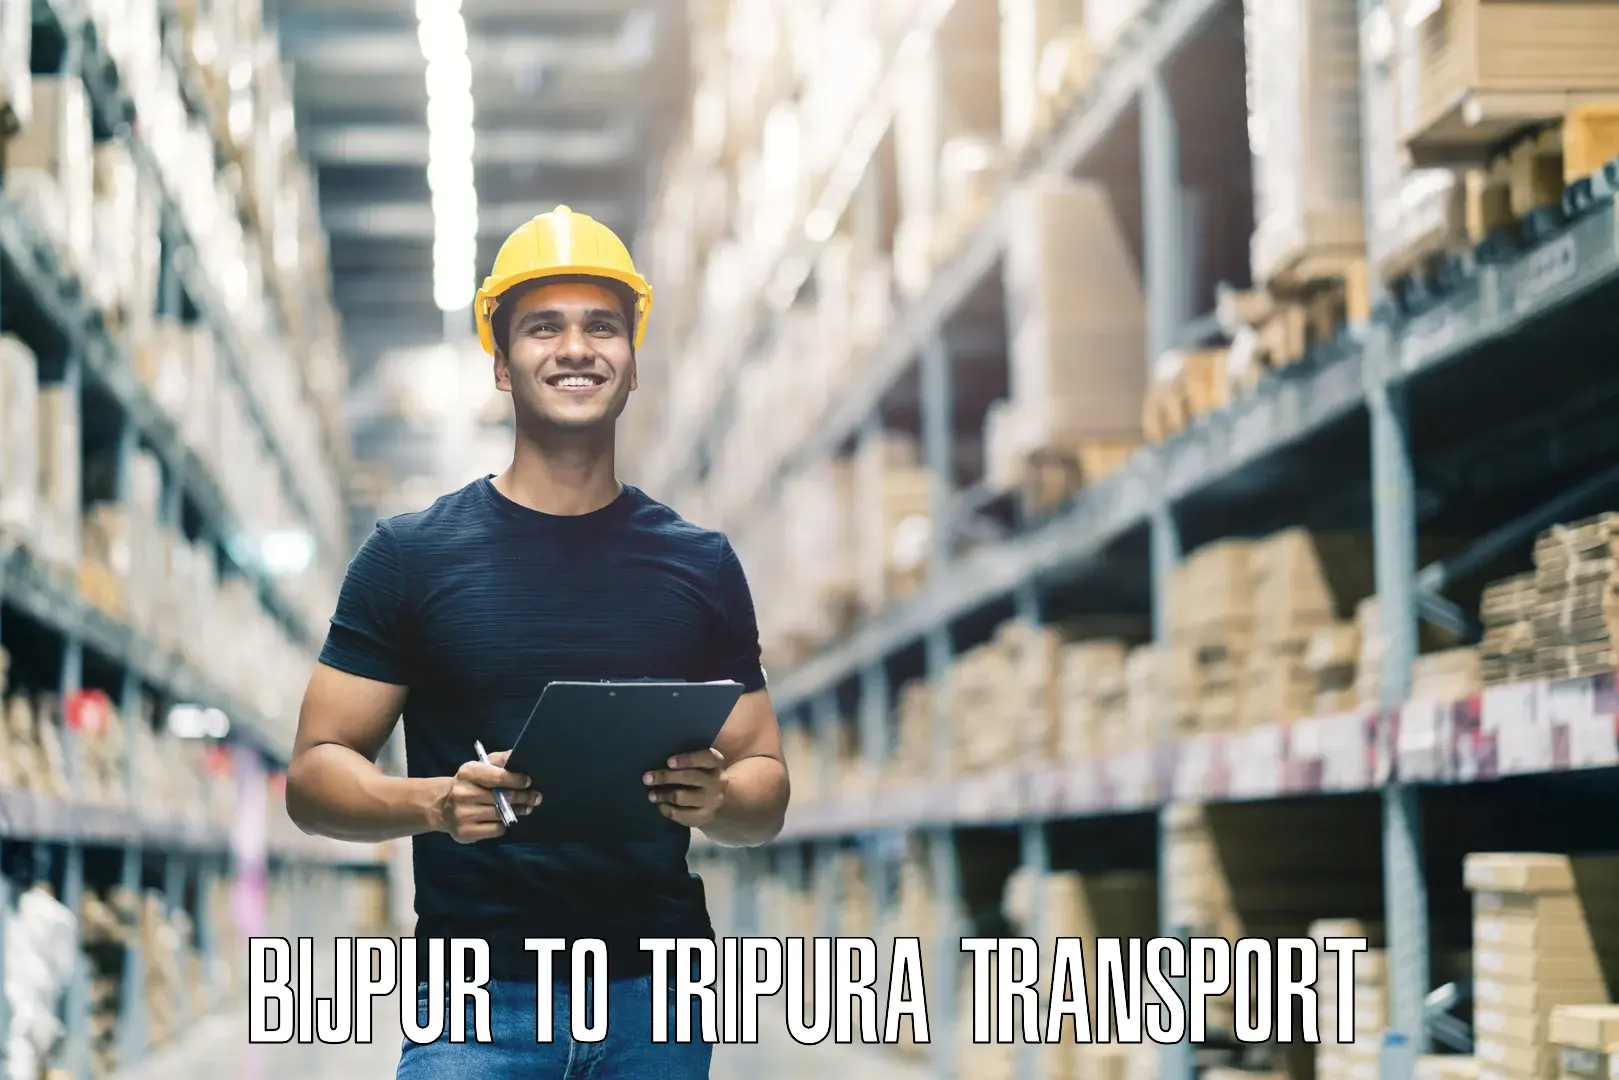 Interstate transport services Bijpur to Udaipur Tripura